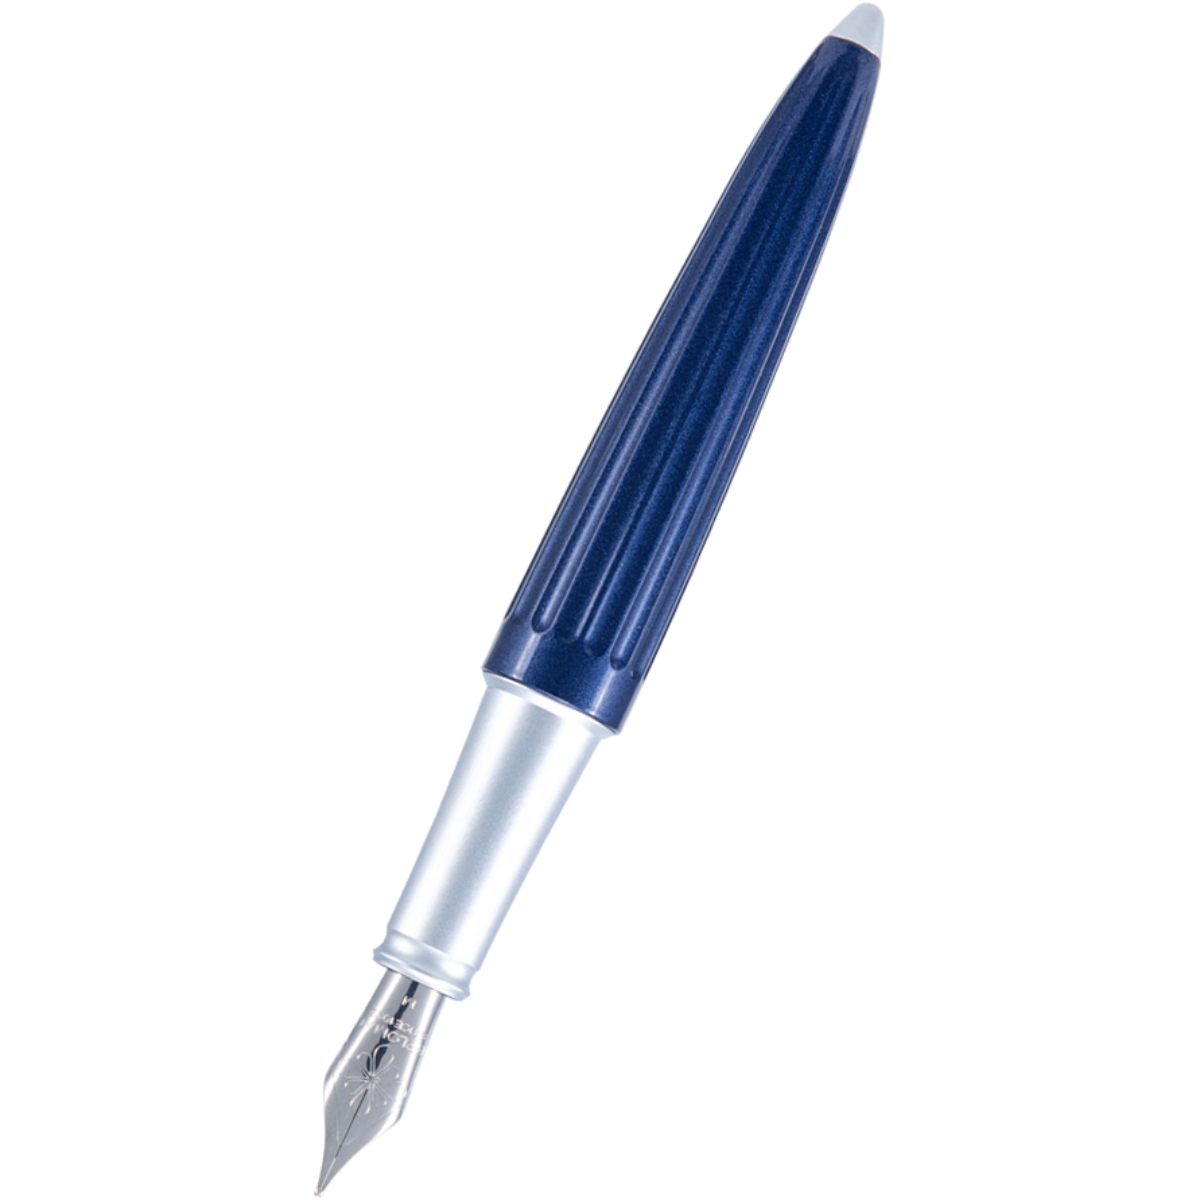 Diplomat Aero Fountain Pen - Midnight Blue Diplomat Pen